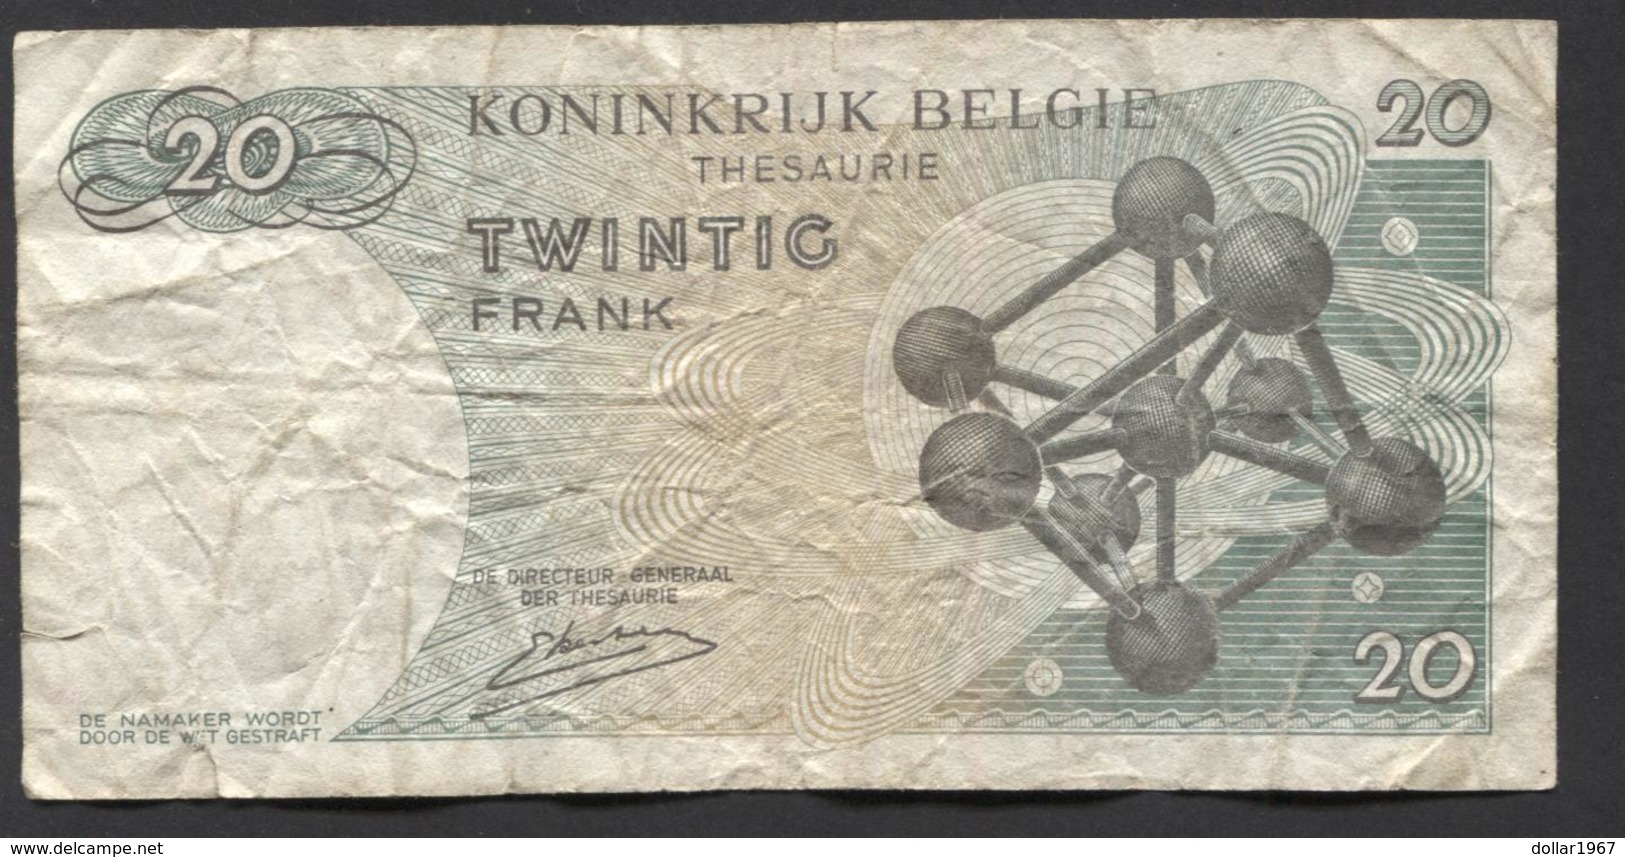 België Belgique Belgium 15 06 1964 -  20 Francs Atomium Baudouin. 3 R 2520913 - 20 Francs